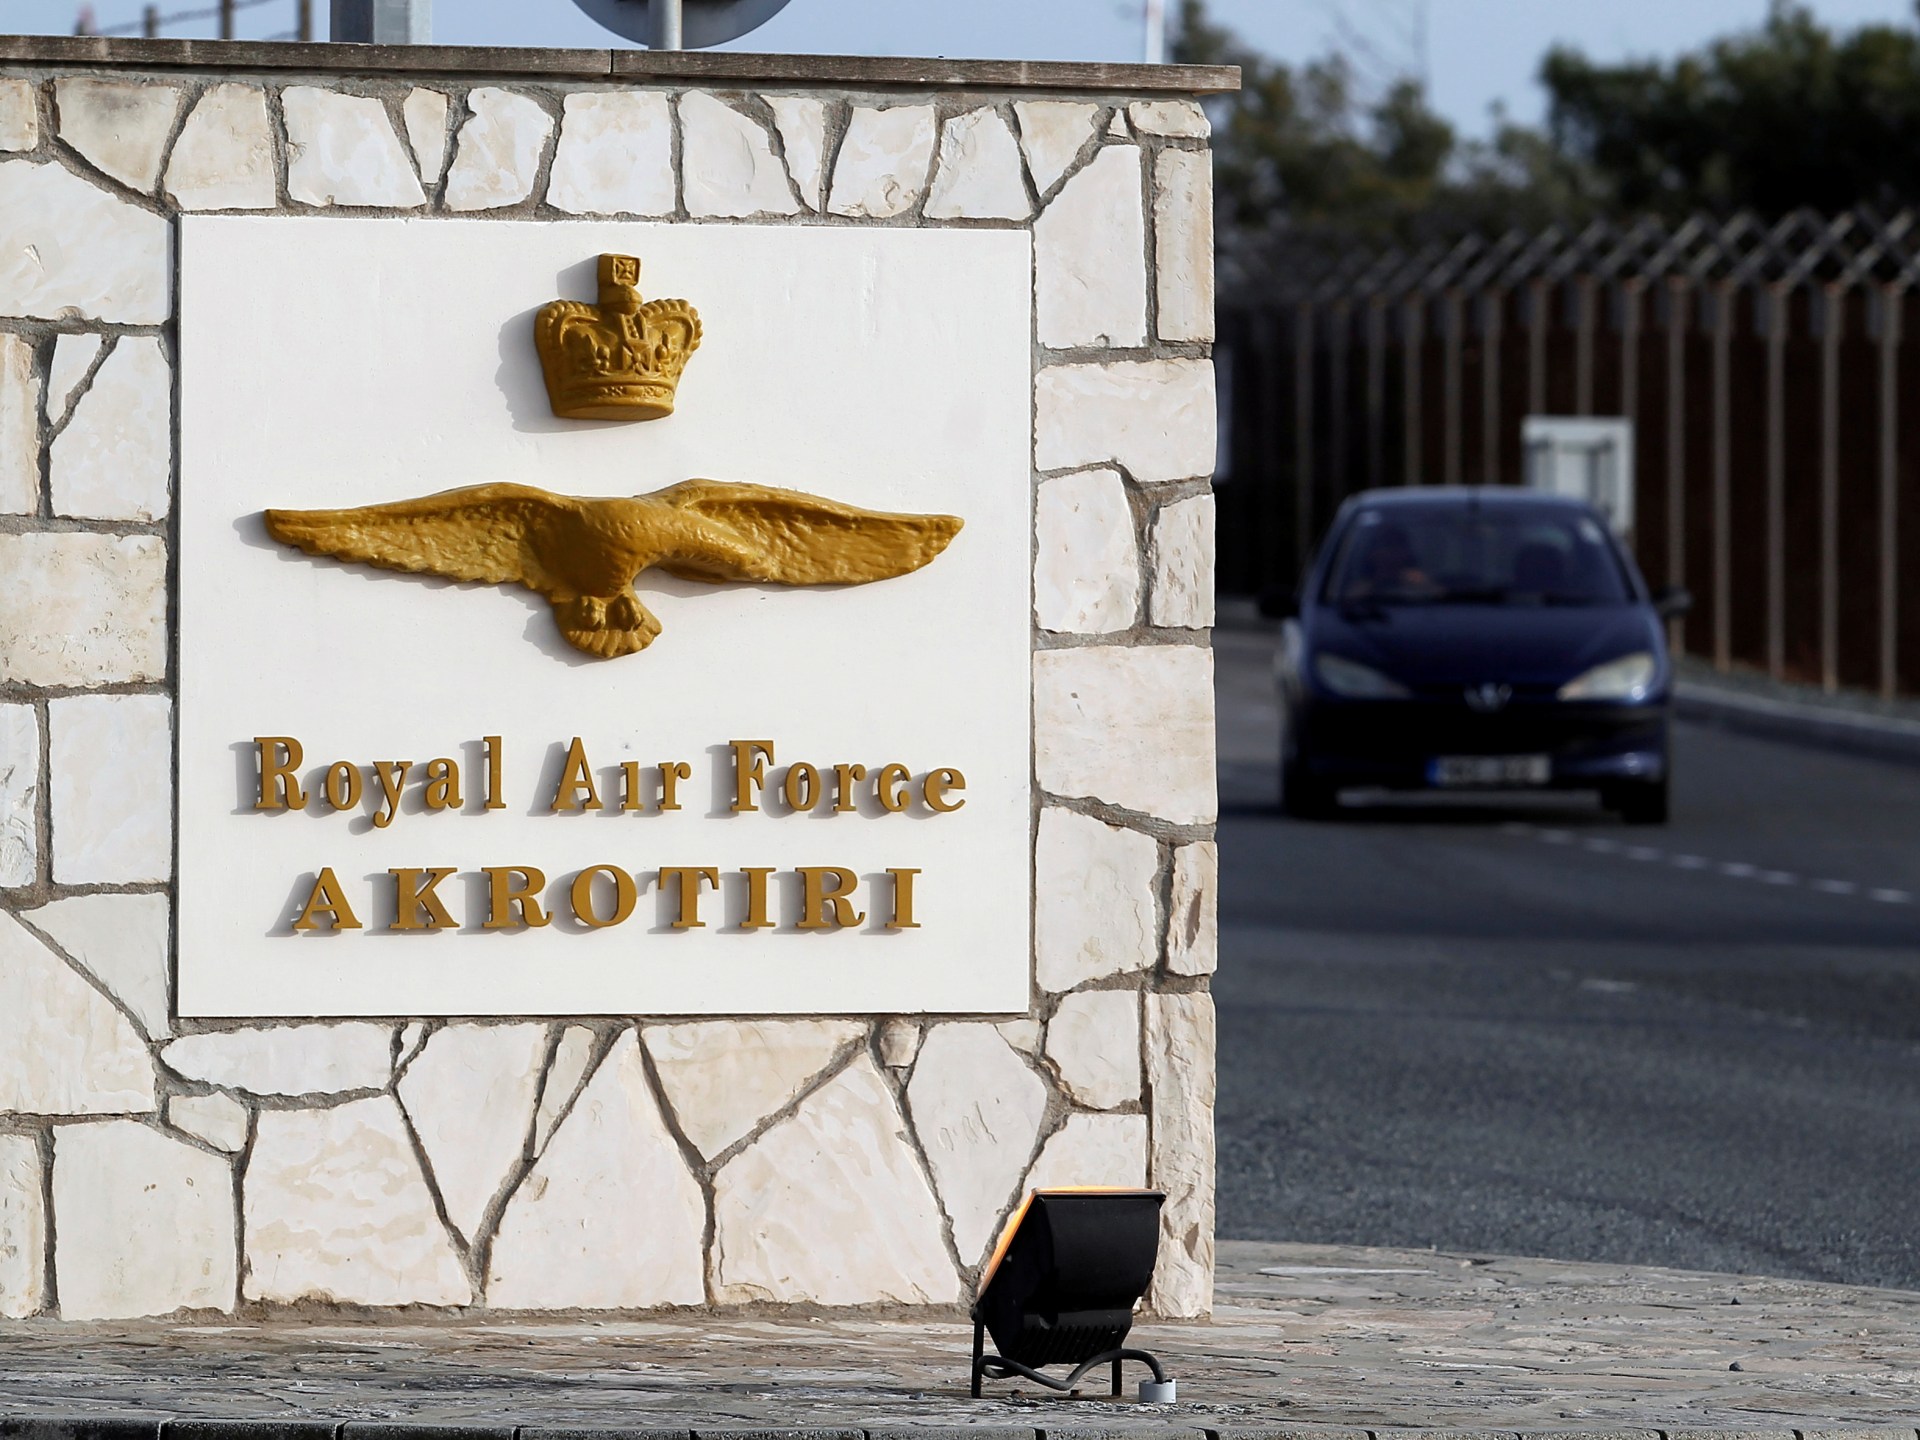 قاعدة "أكروتيري" في قبرص.. عين بريطانيا على الشرق الأوسط